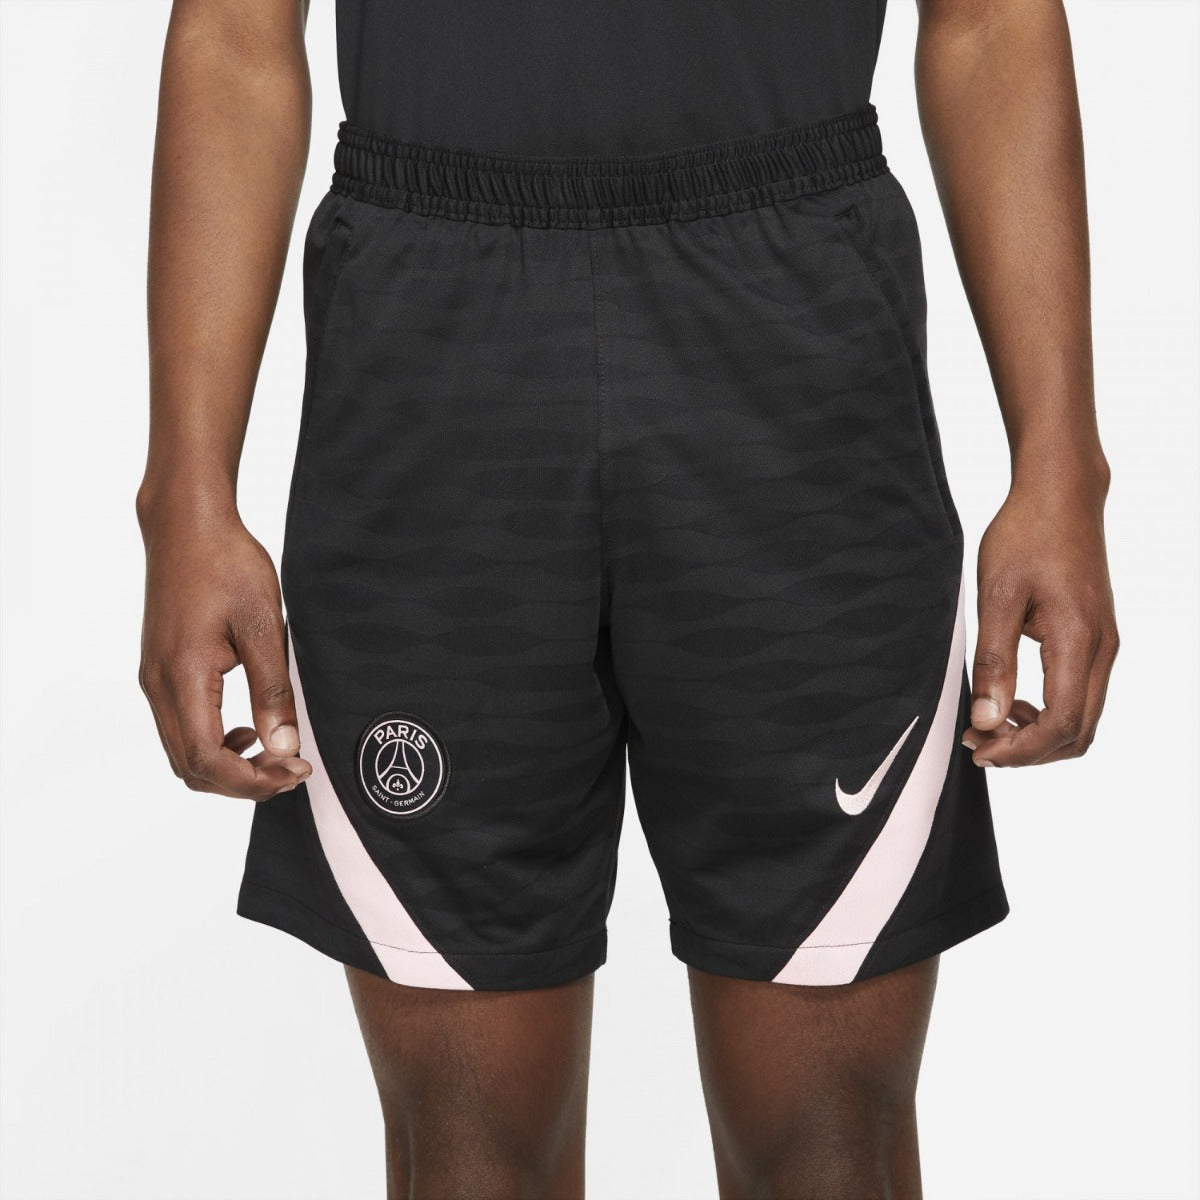 Paris Saint-Germain x Jordan Strike Short Shorts - Black